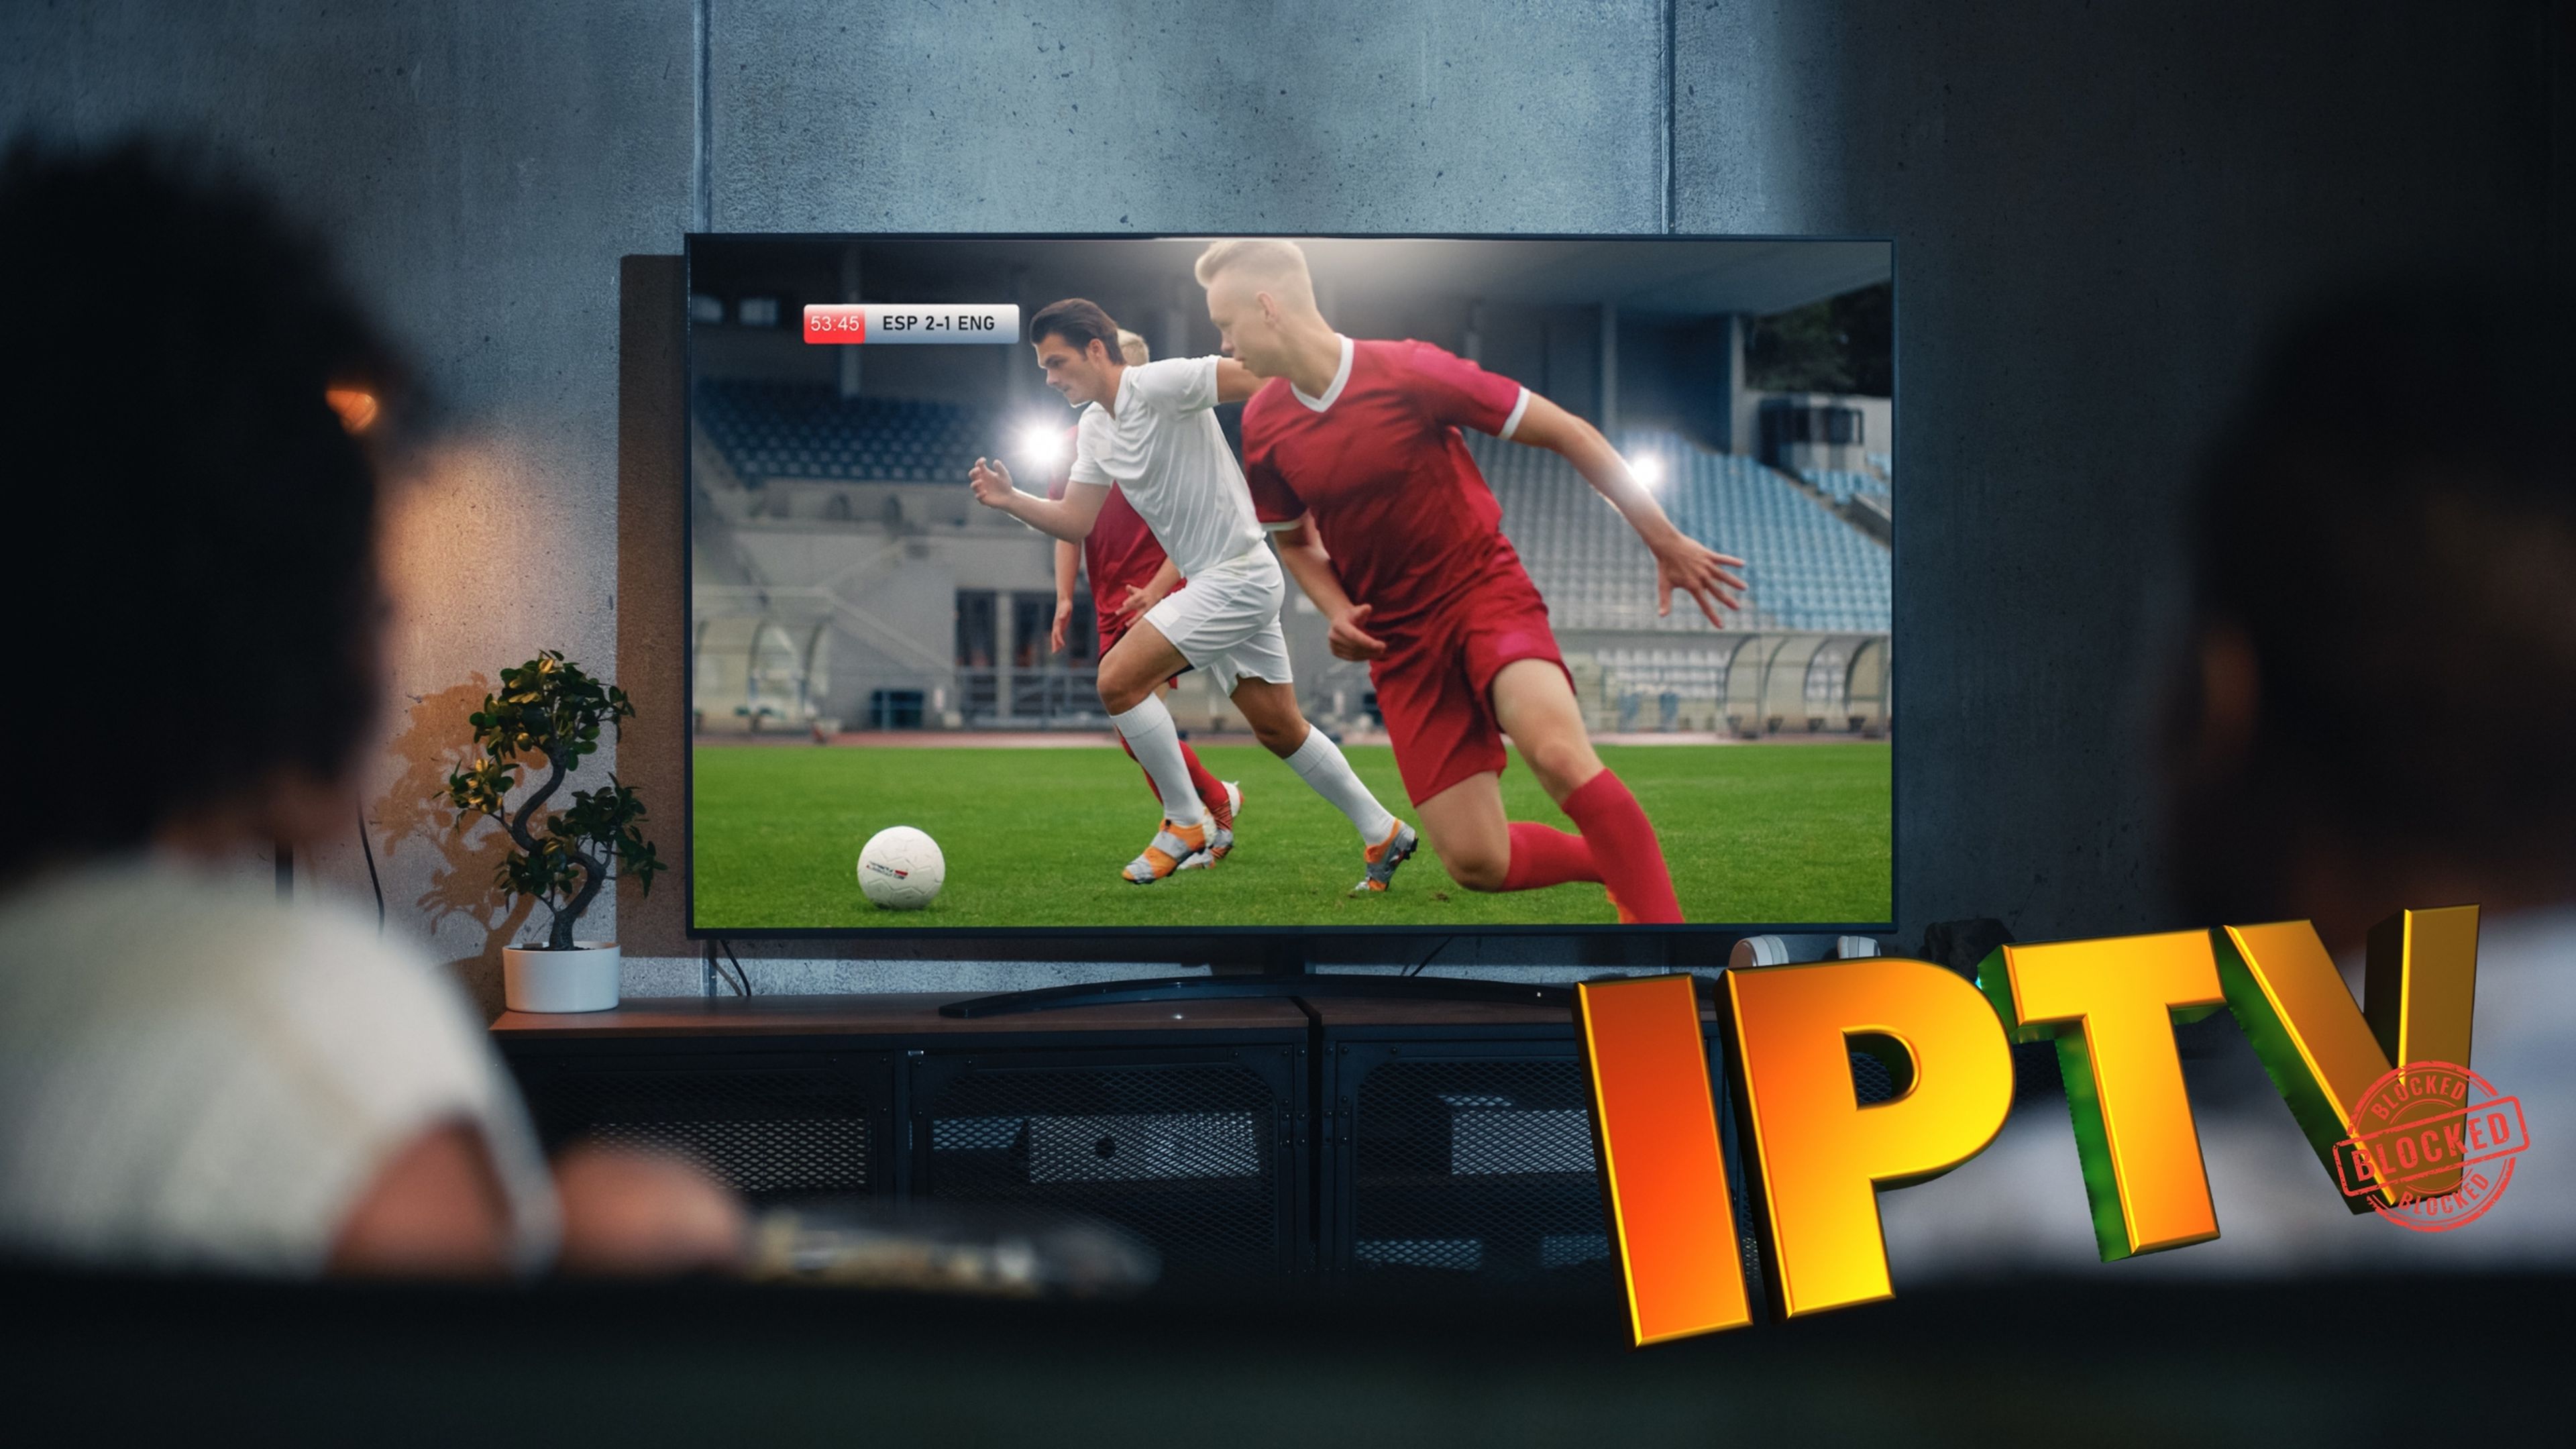 Aumenta la presión a los ISP para acabar con el fútbol por IPTV